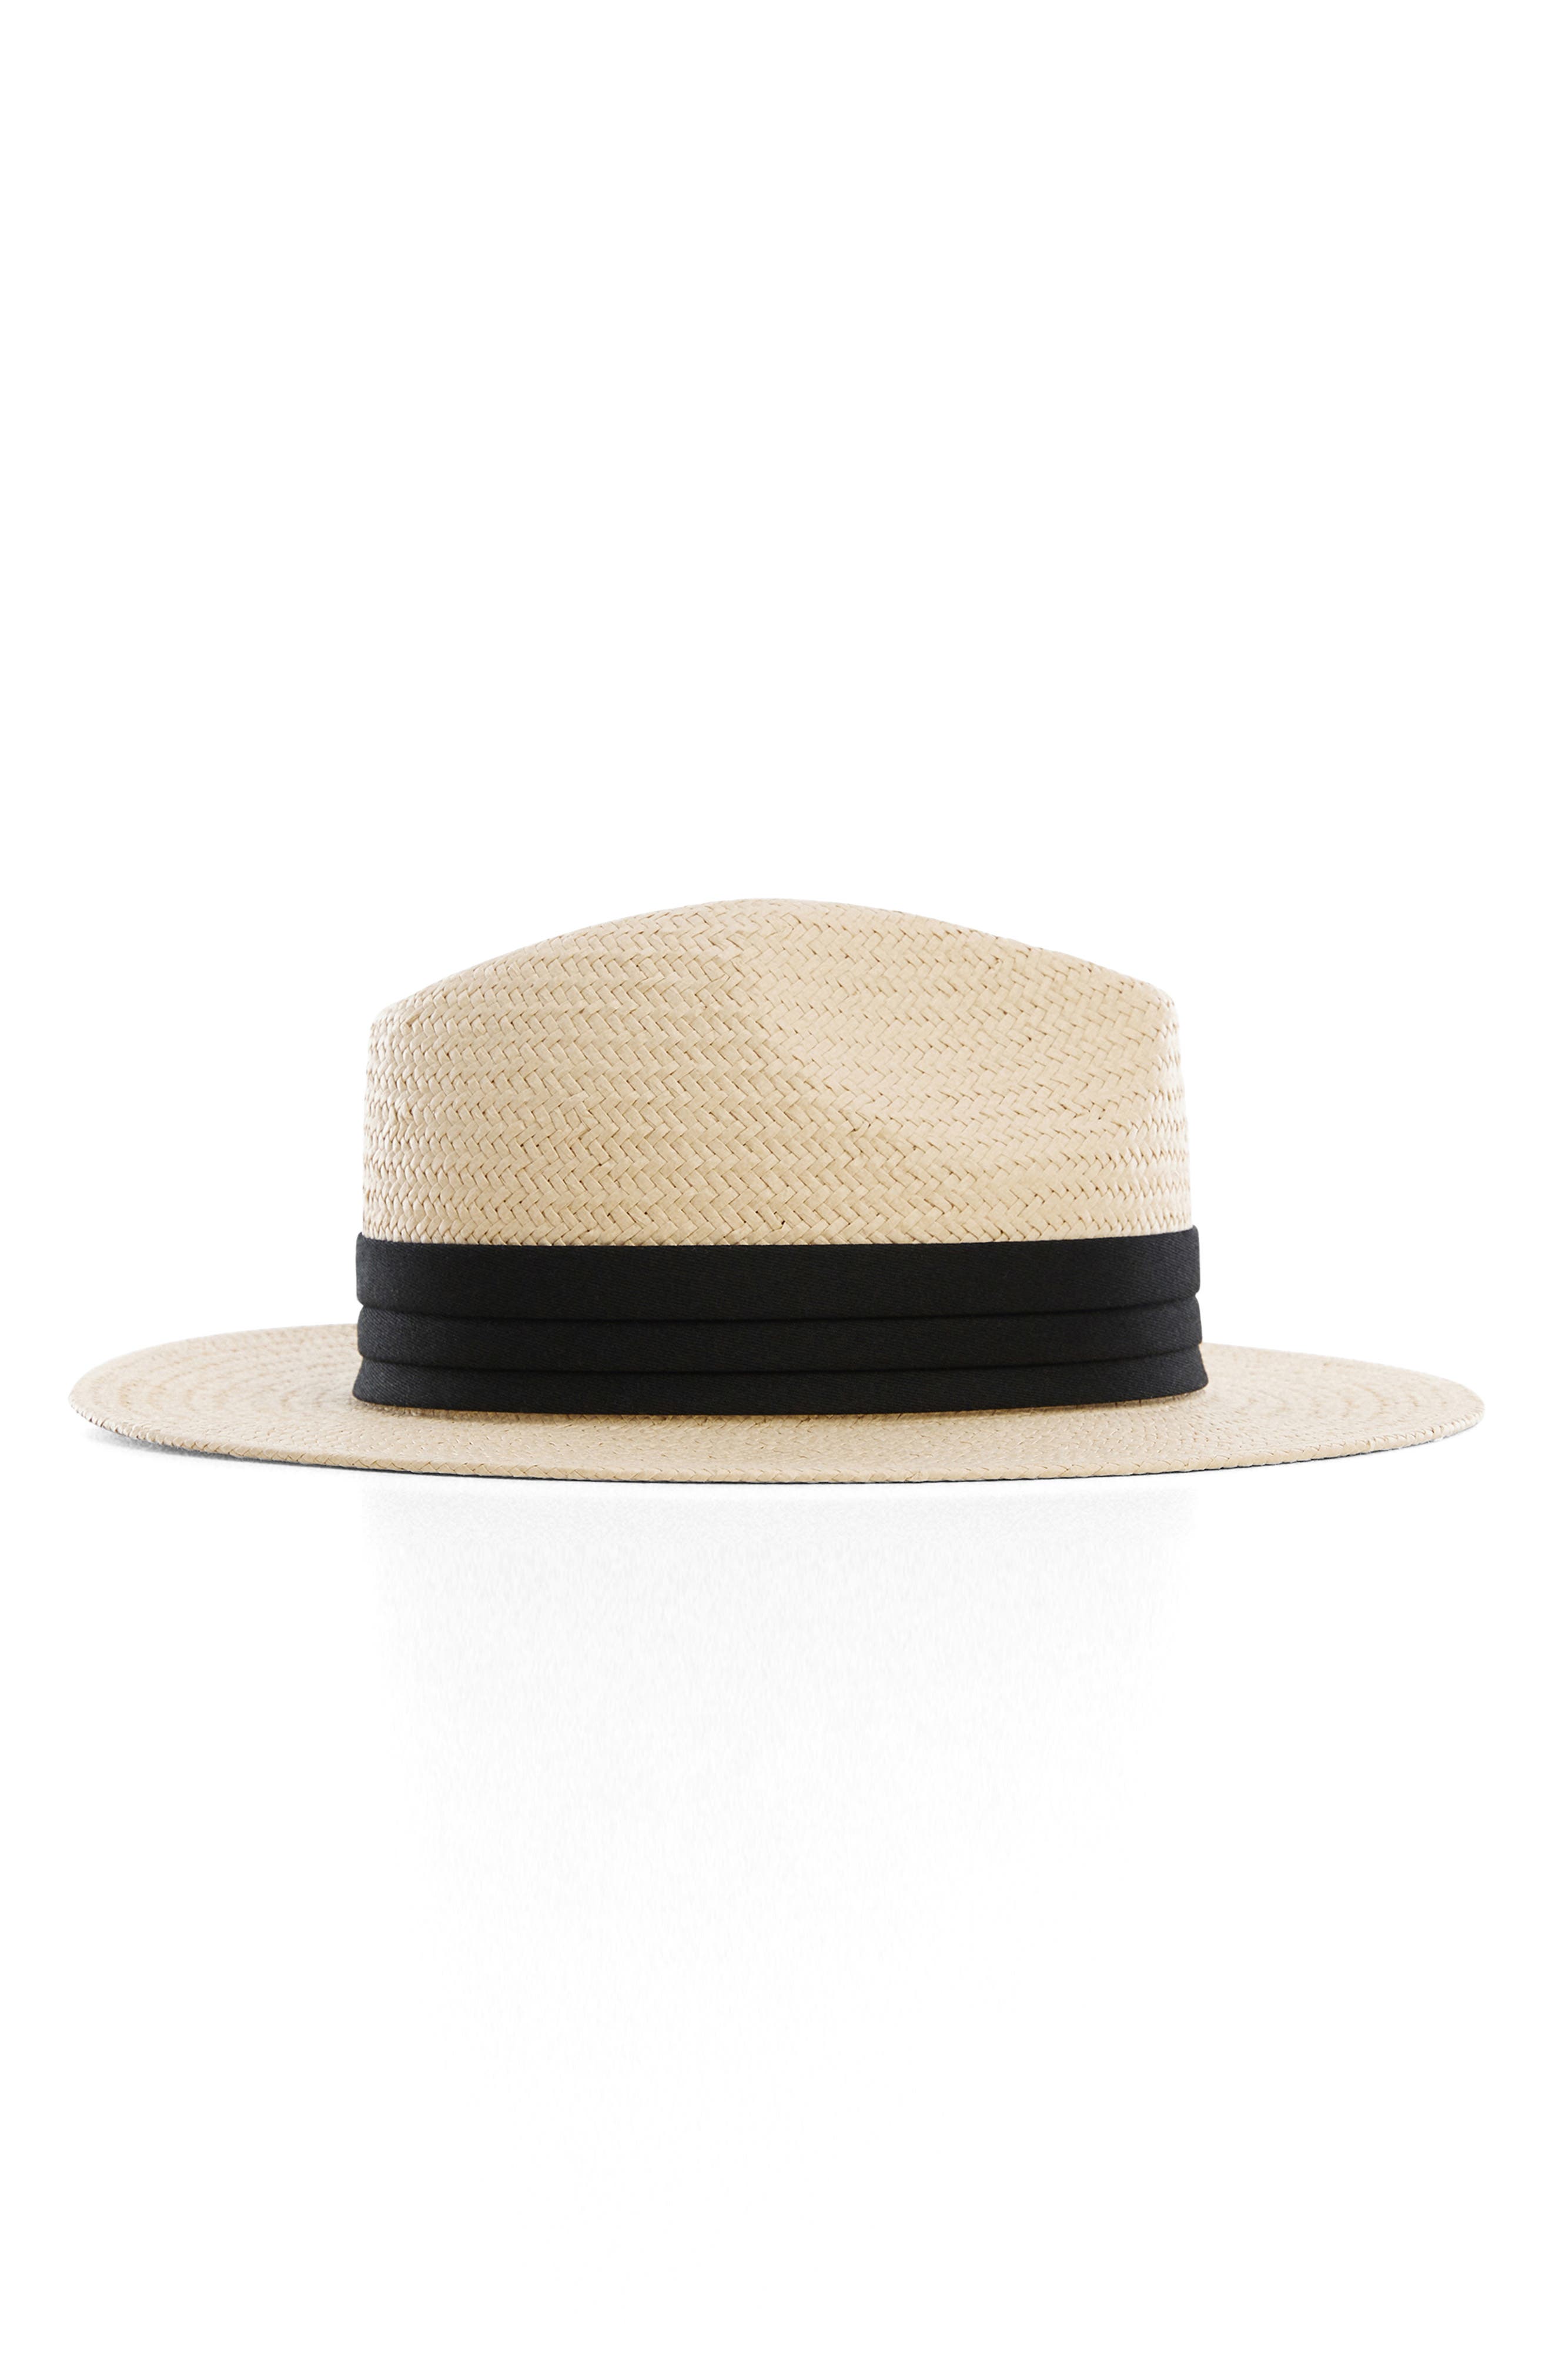 国産セールN-PANAMA HAT LONG 帽子